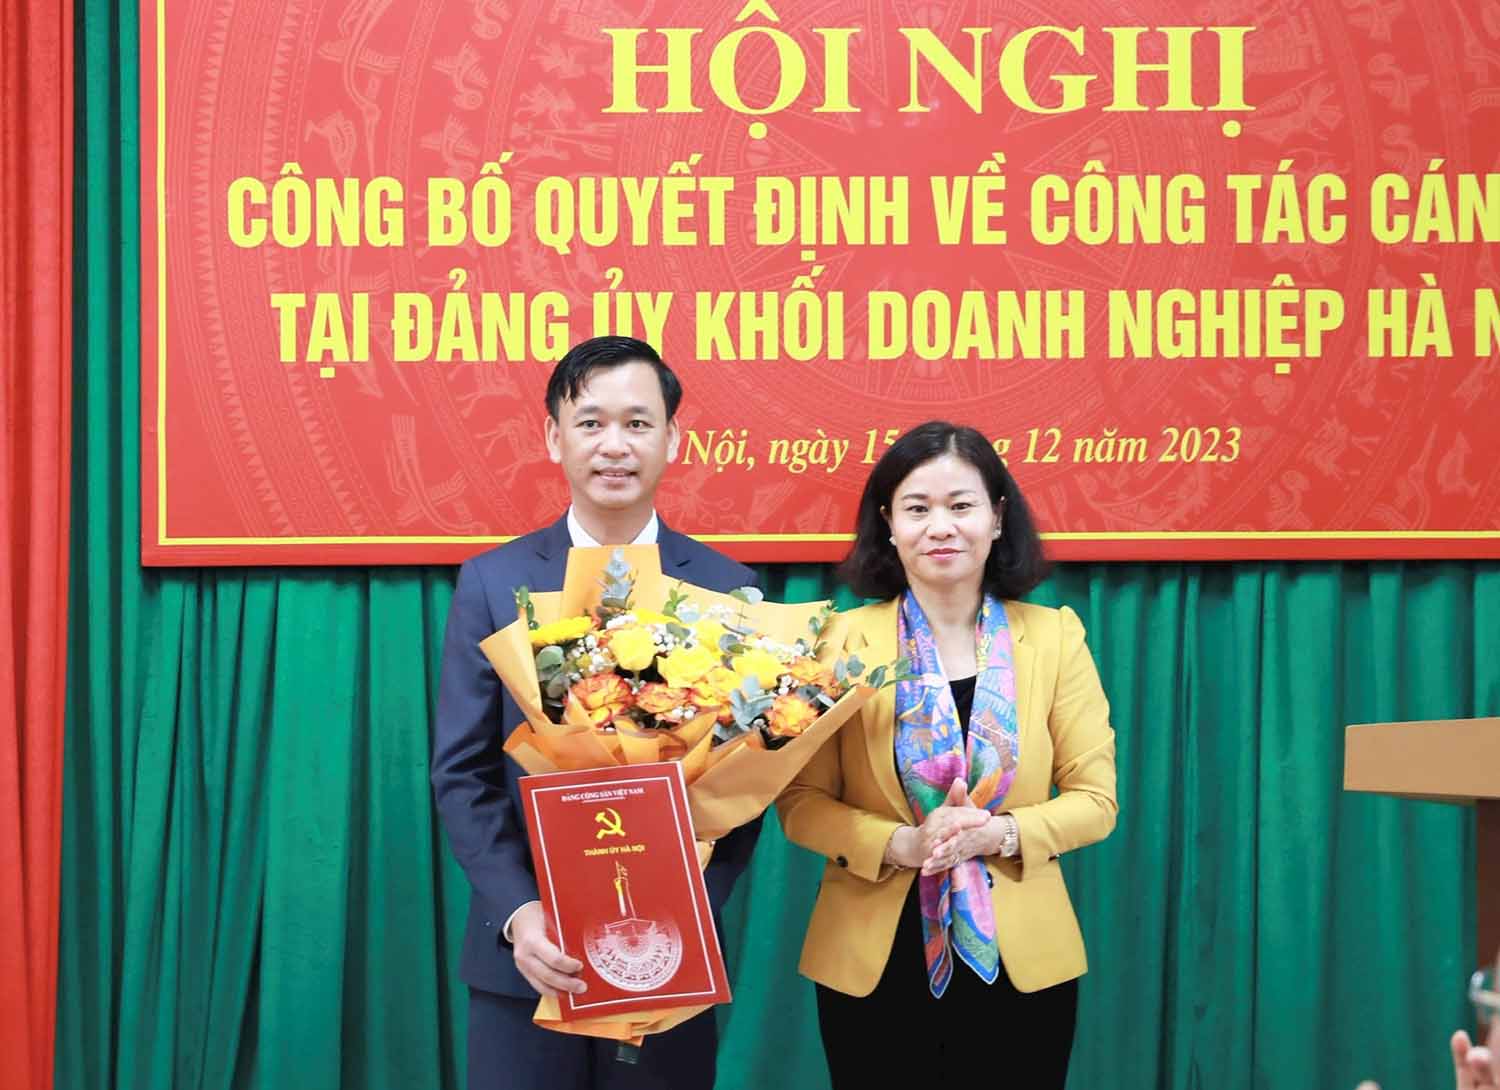 Phó Bí thư Thường trực Thành ủy Hà Nội Nguyễn Thị Tuyến trao quyết định và tặng hoa chúc mừng ông Lương Mạnh Sơn. Ảnh: Hanoi.gov.vn